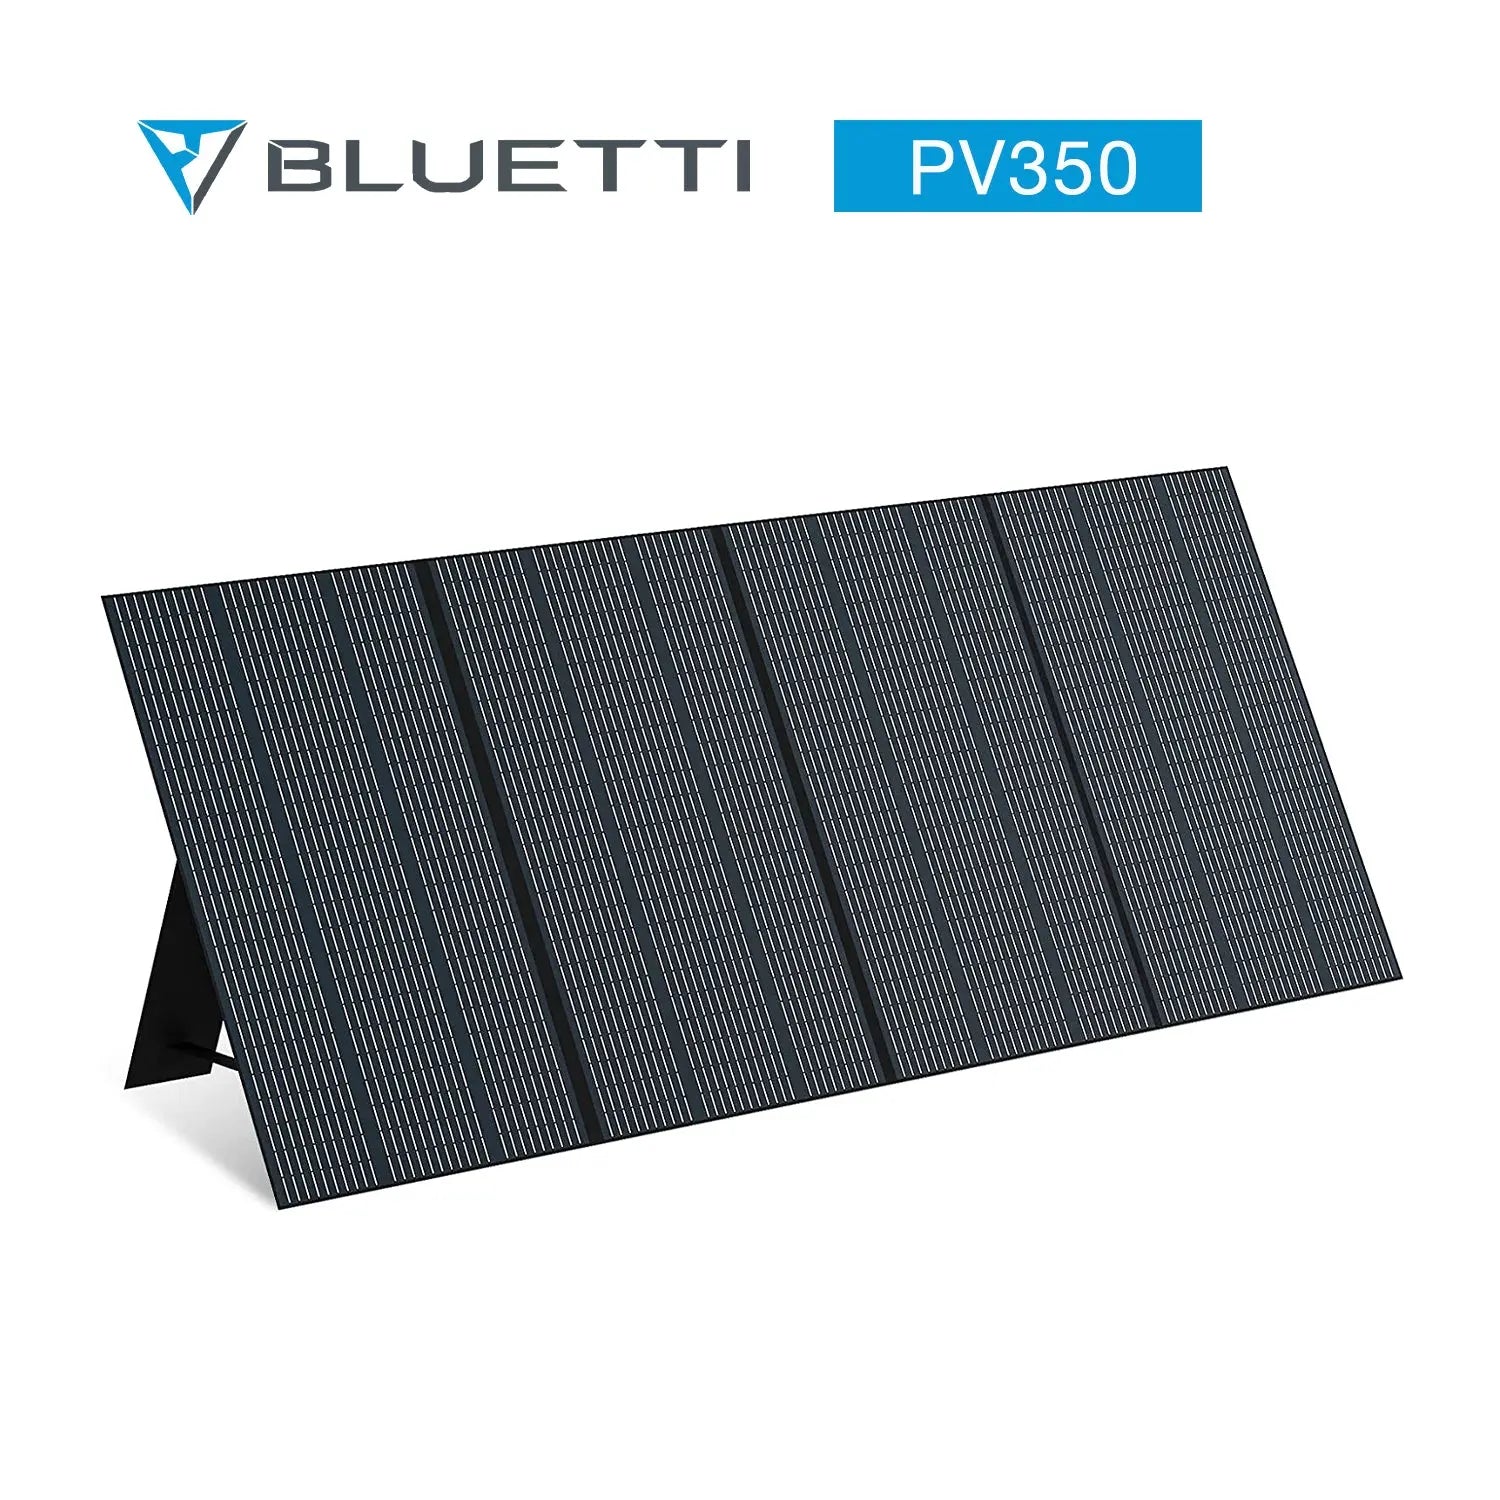 BLUETTI PV350 Portable Solar Panel| 350W BLUETTI